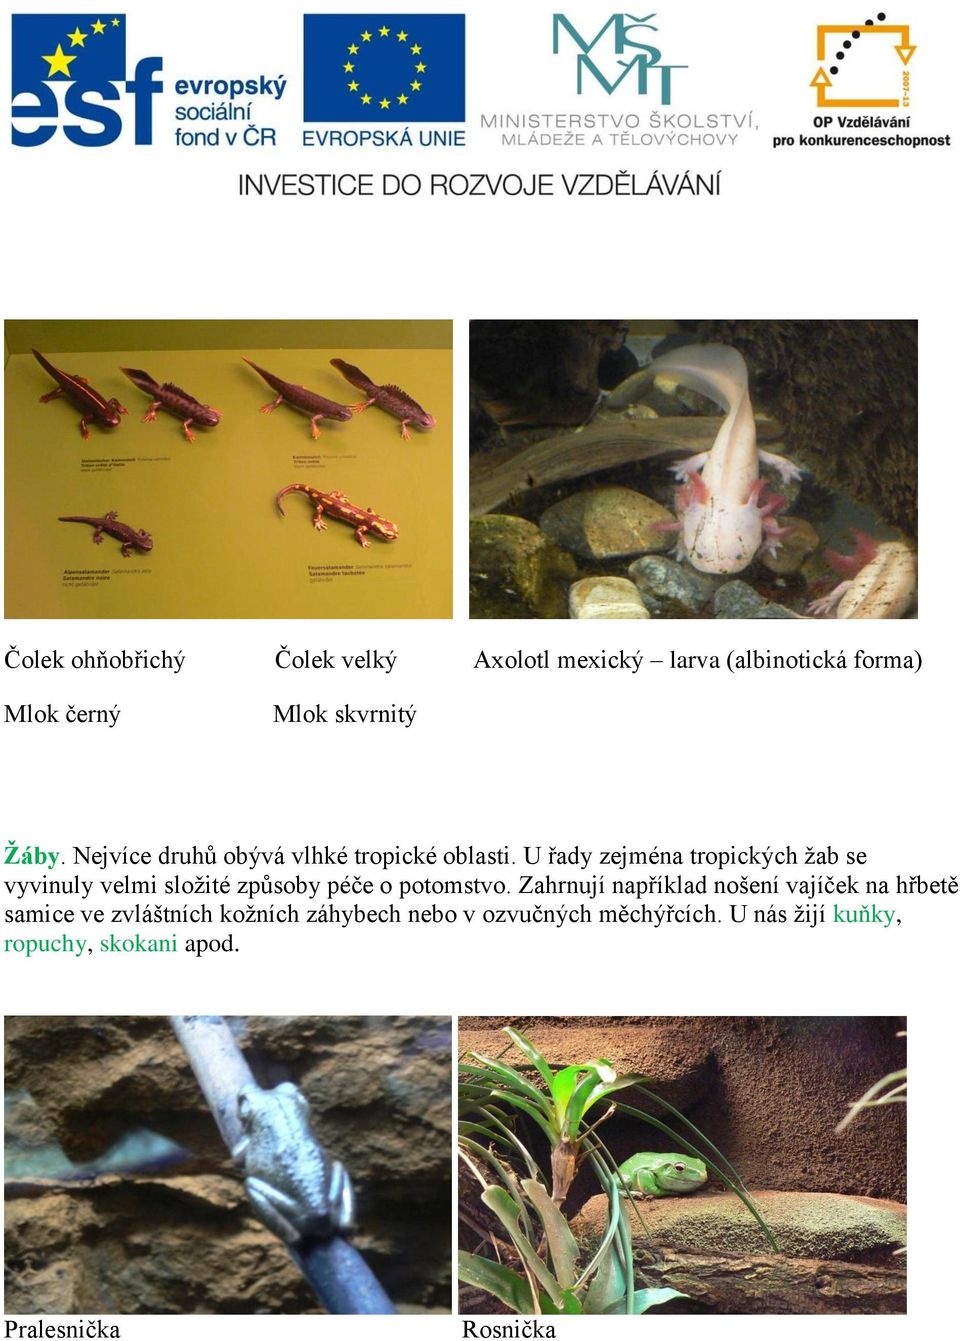 U řady zejména tropických žab se vyvinuly velmi složité způsoby péče o potomstvo.